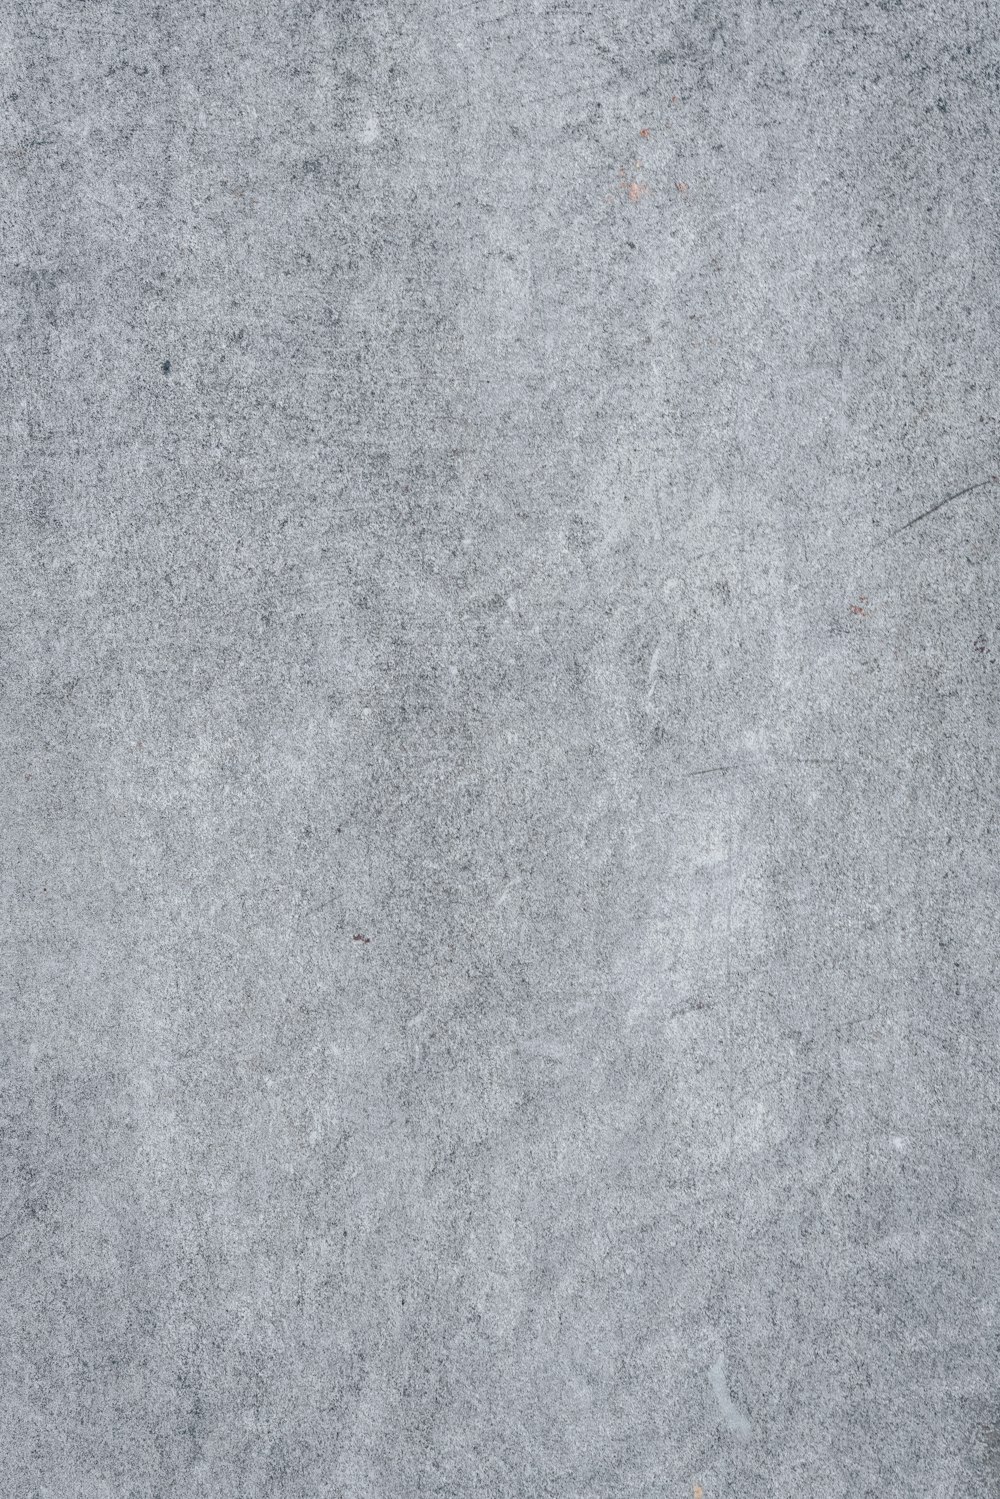 un primo piano di una superficie di cemento grigio